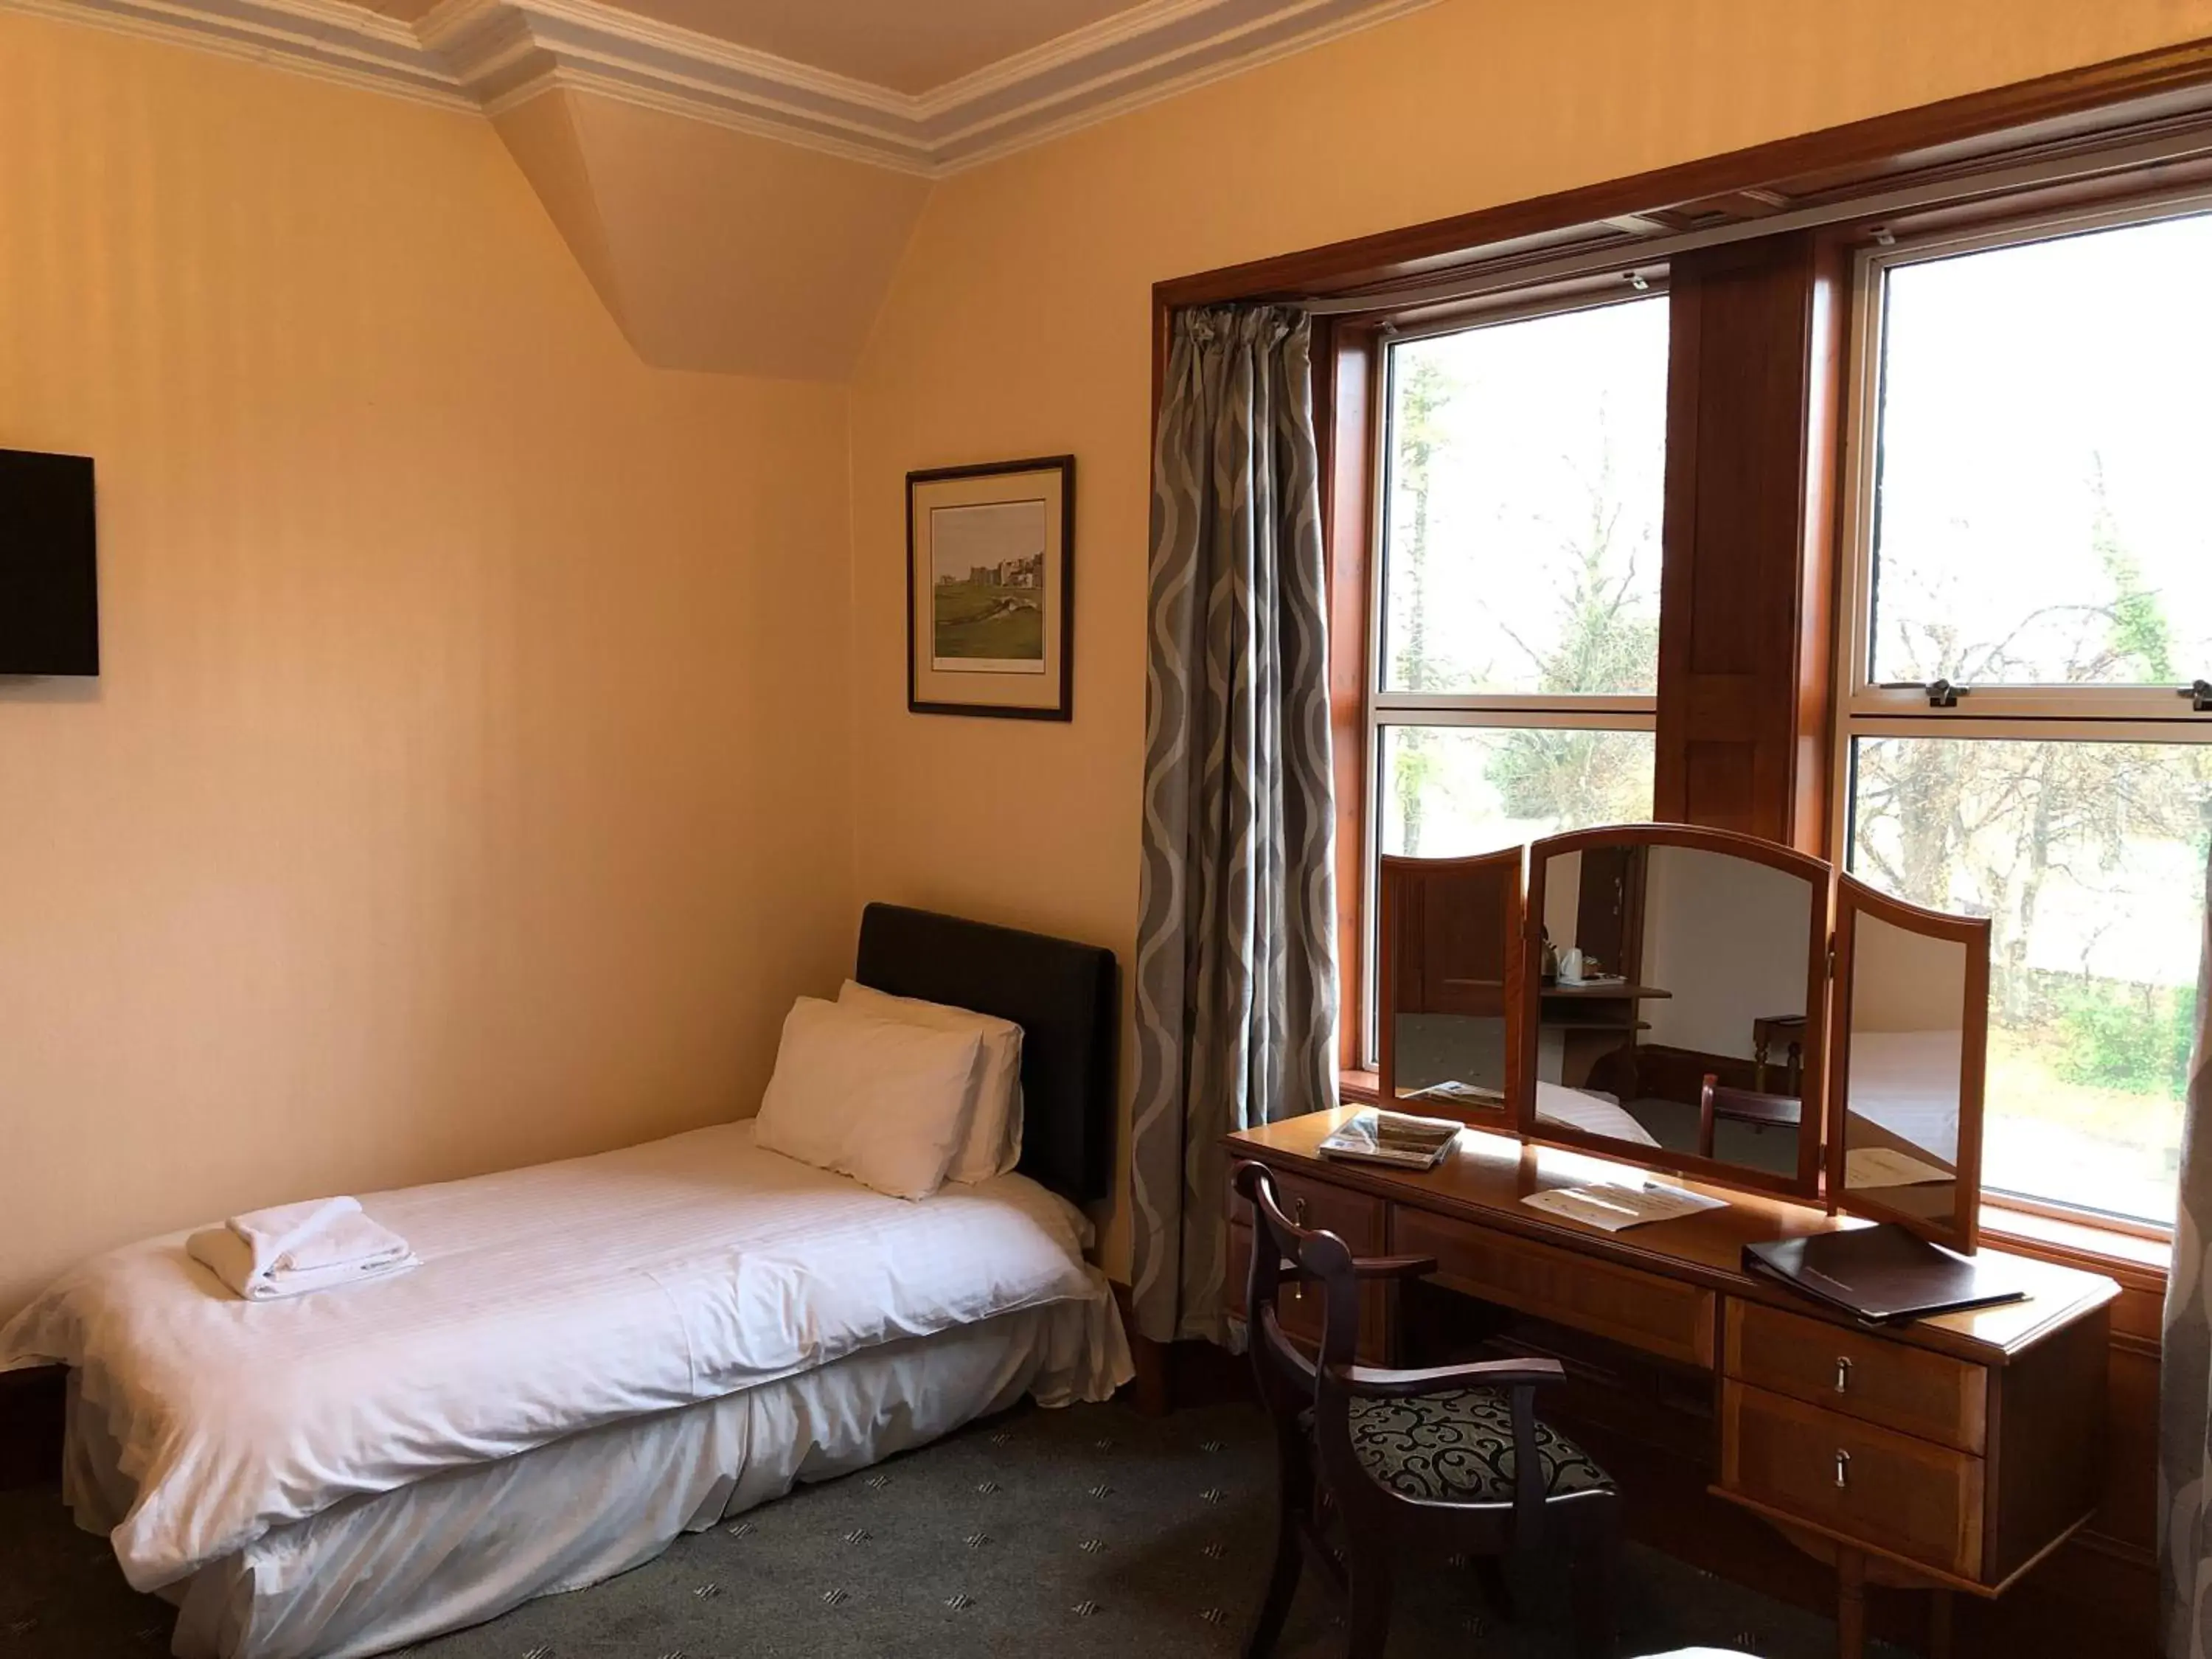 Bed in Westerlea Hotel Nairn